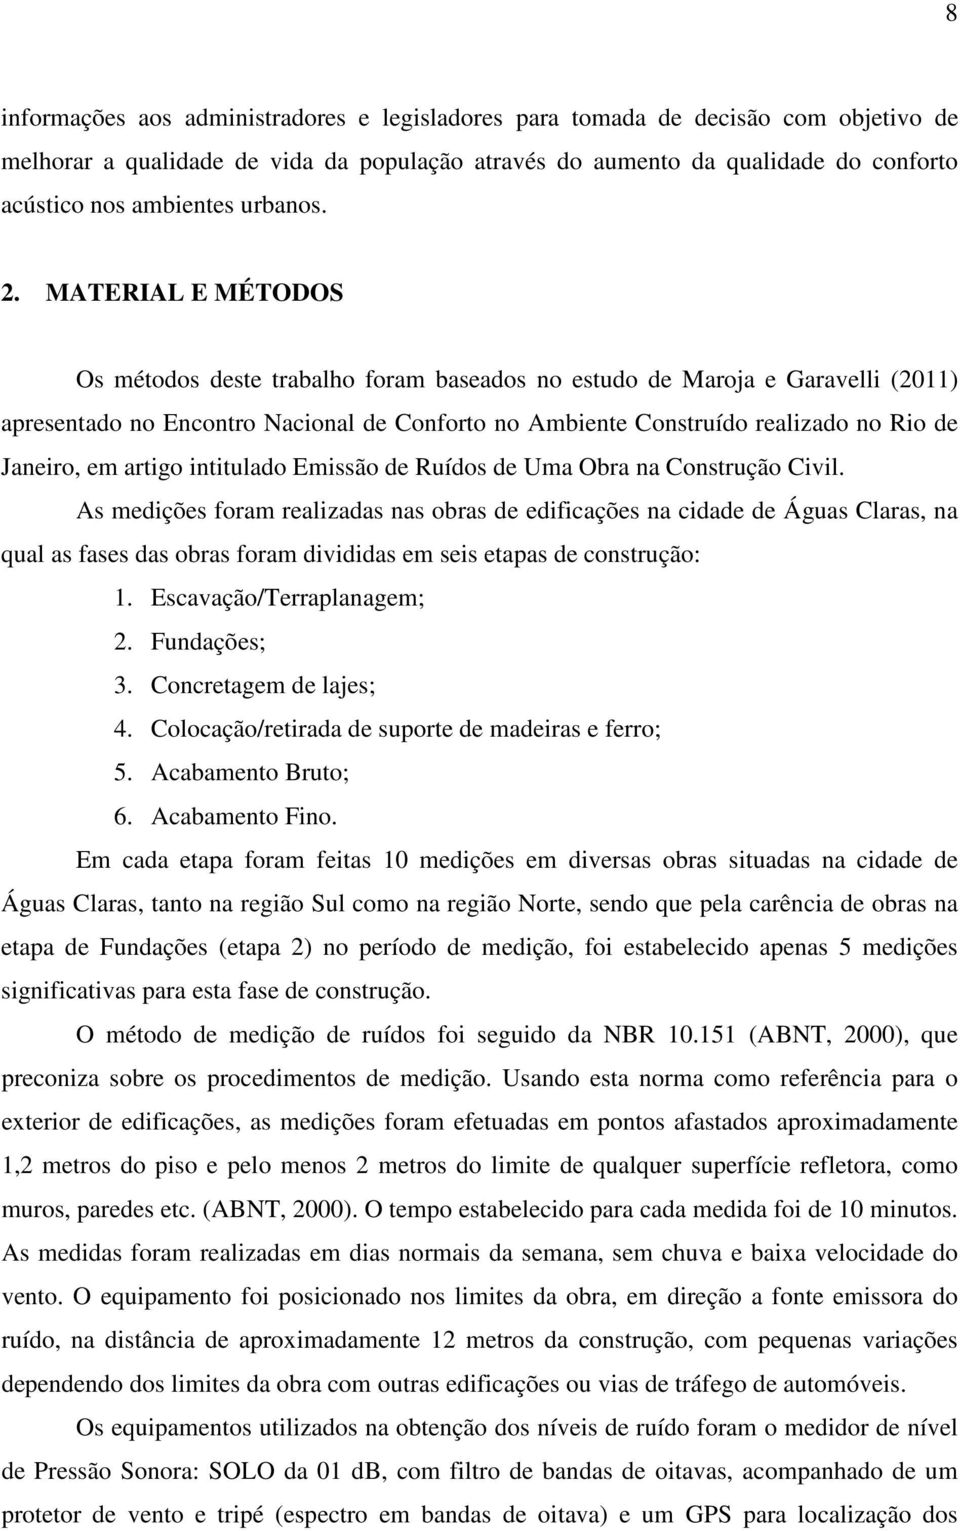 MATERIAL E MÉTODOS Os métodos deste trabalho foram baseados no estudo de Maroja e Garavelli (2011) apresentado no Encontro Nacional de Conforto no Ambiente Construído realizado no Rio de Janeiro, em